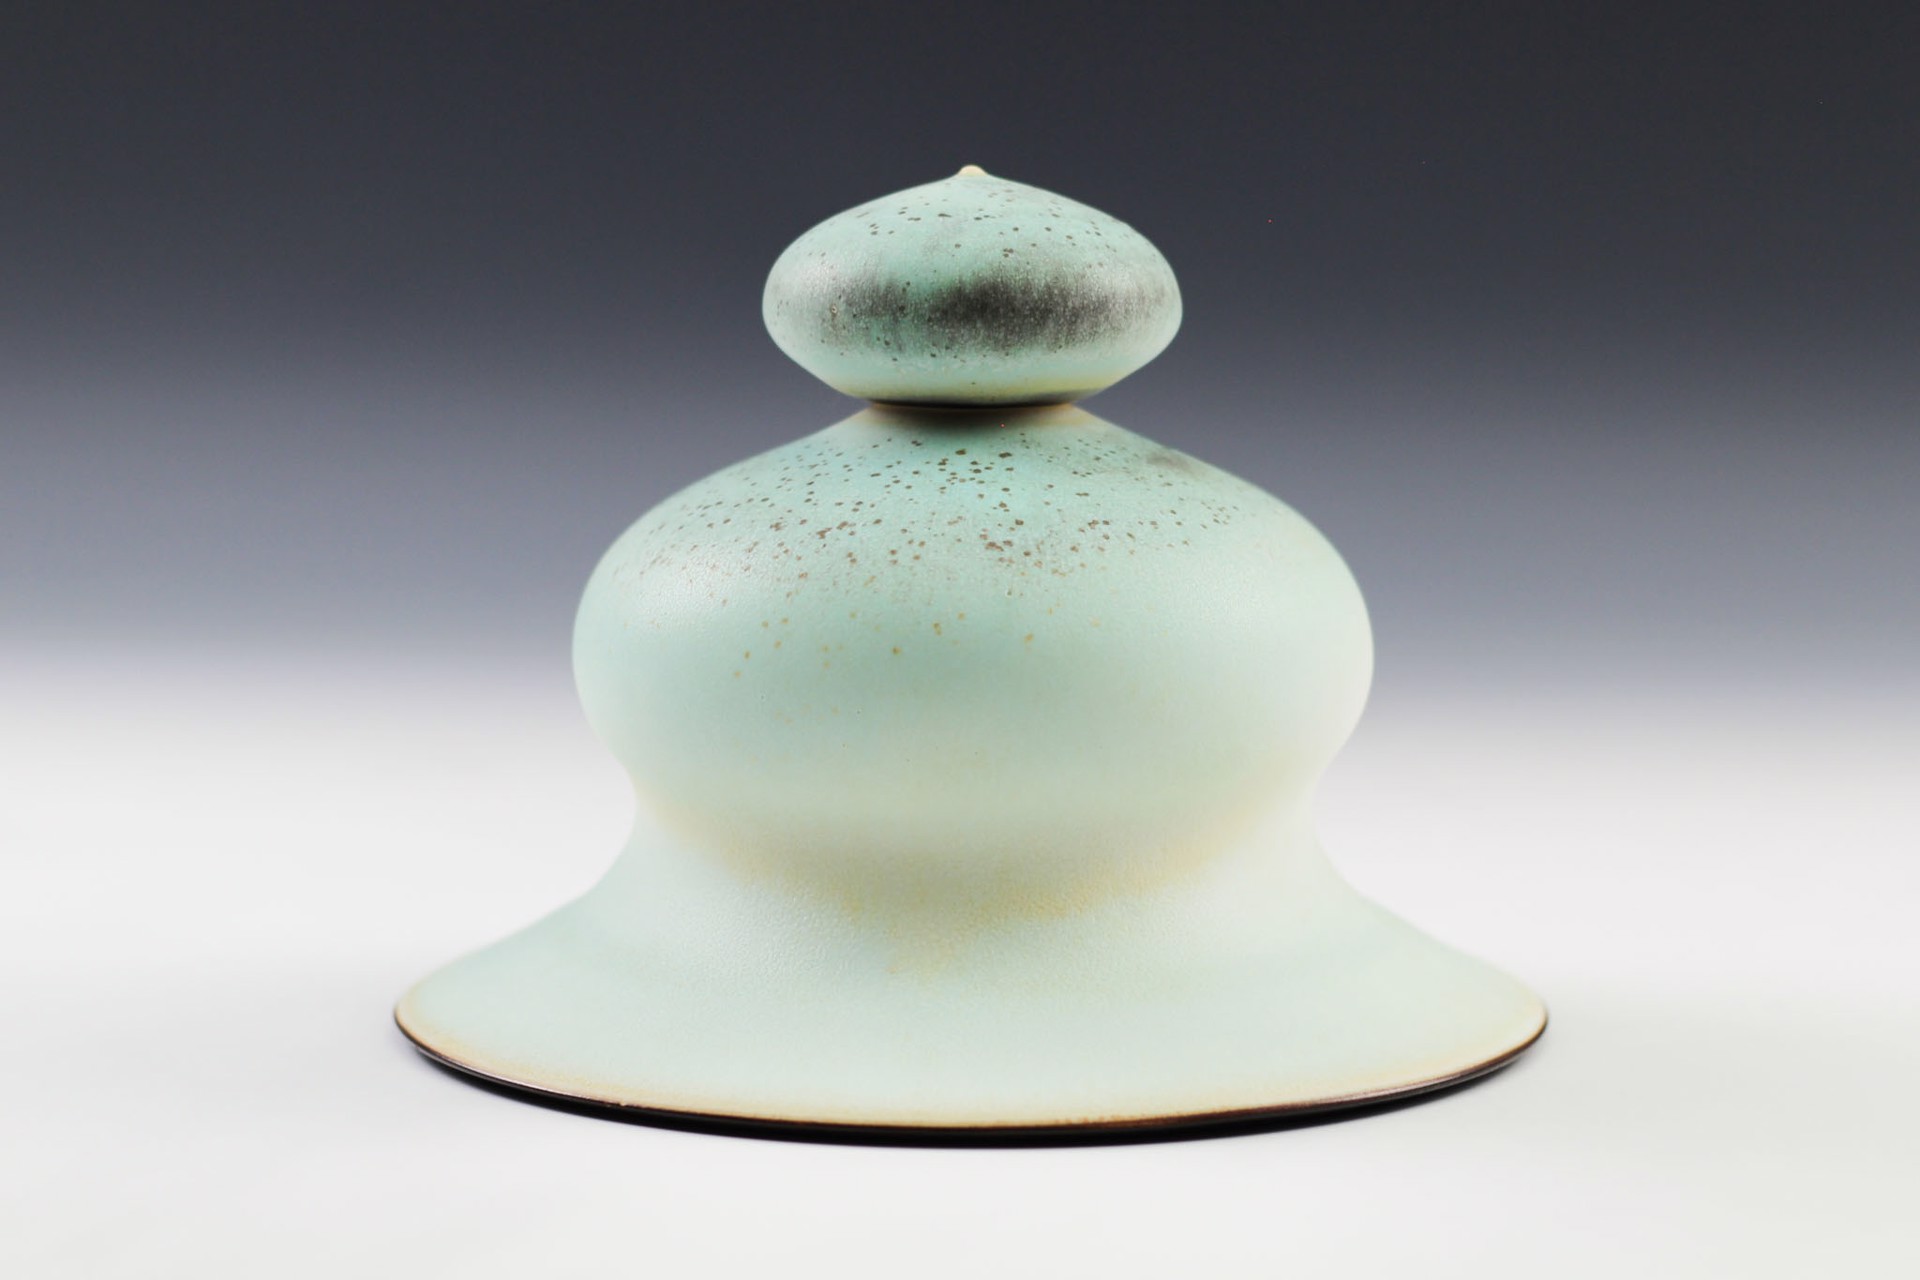 Aqua "Bell" Jar by Charlie Olson